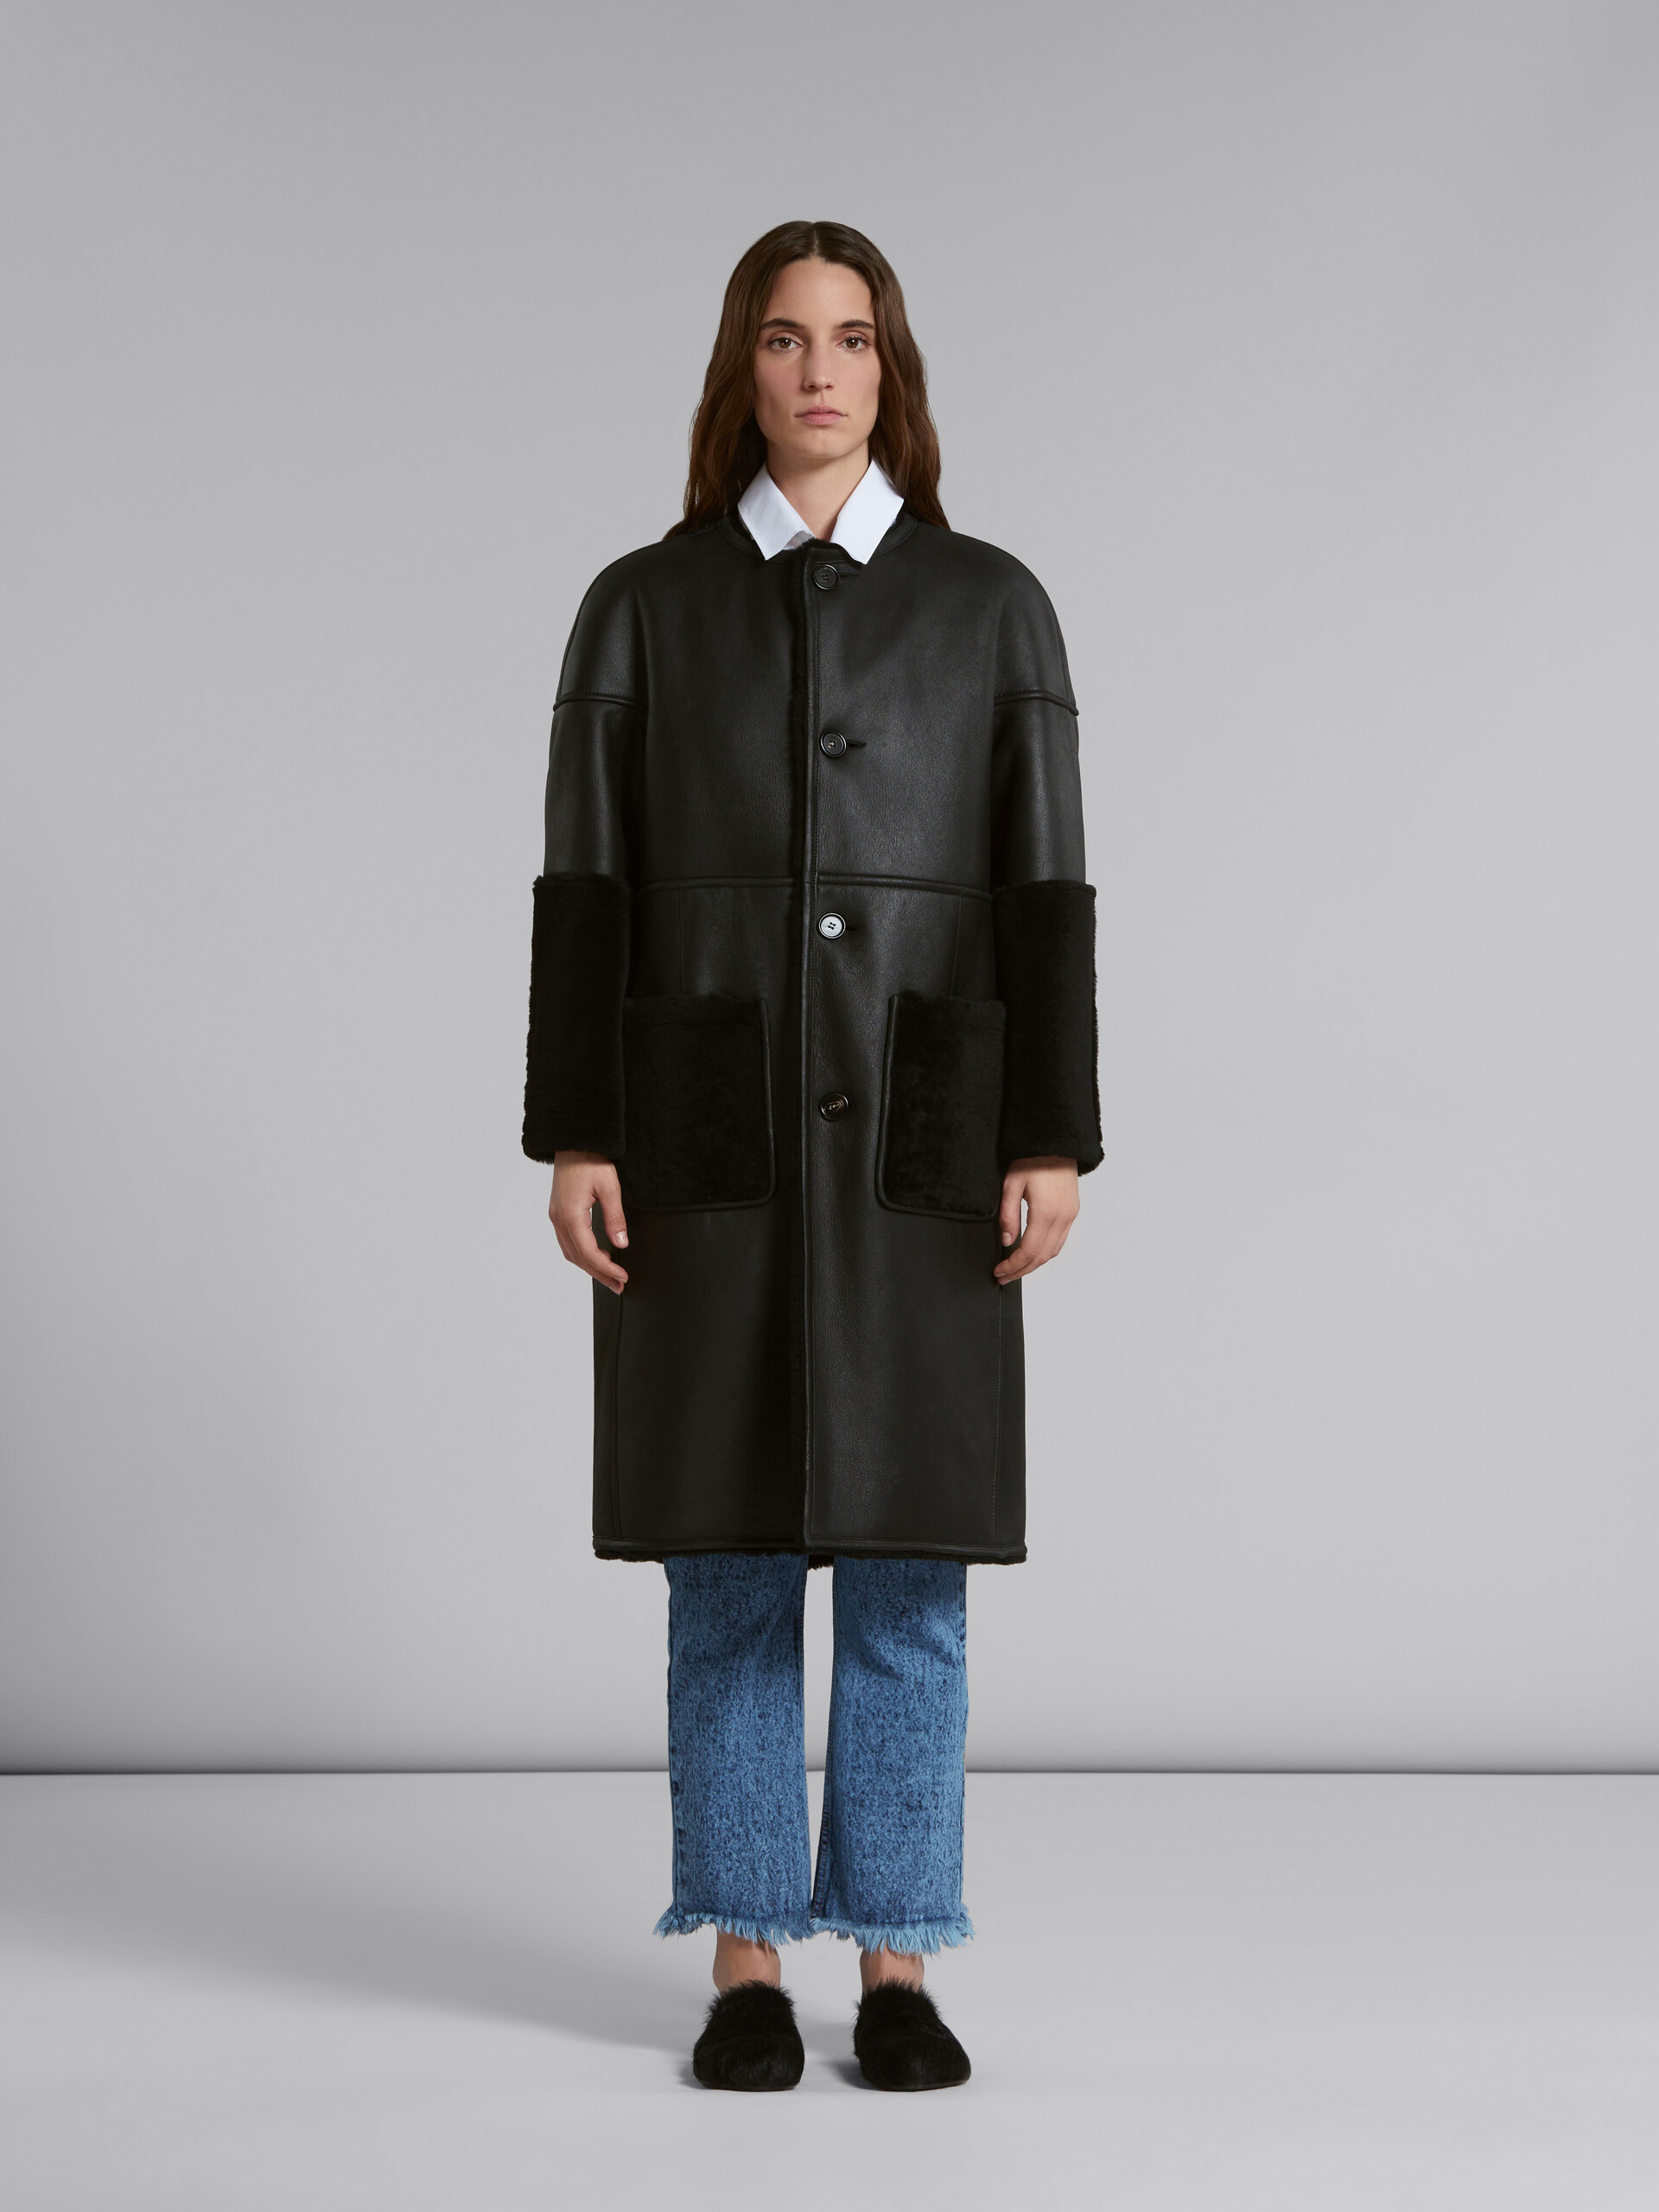 Manteau réversible en shearling noir - Vestes - Image 2